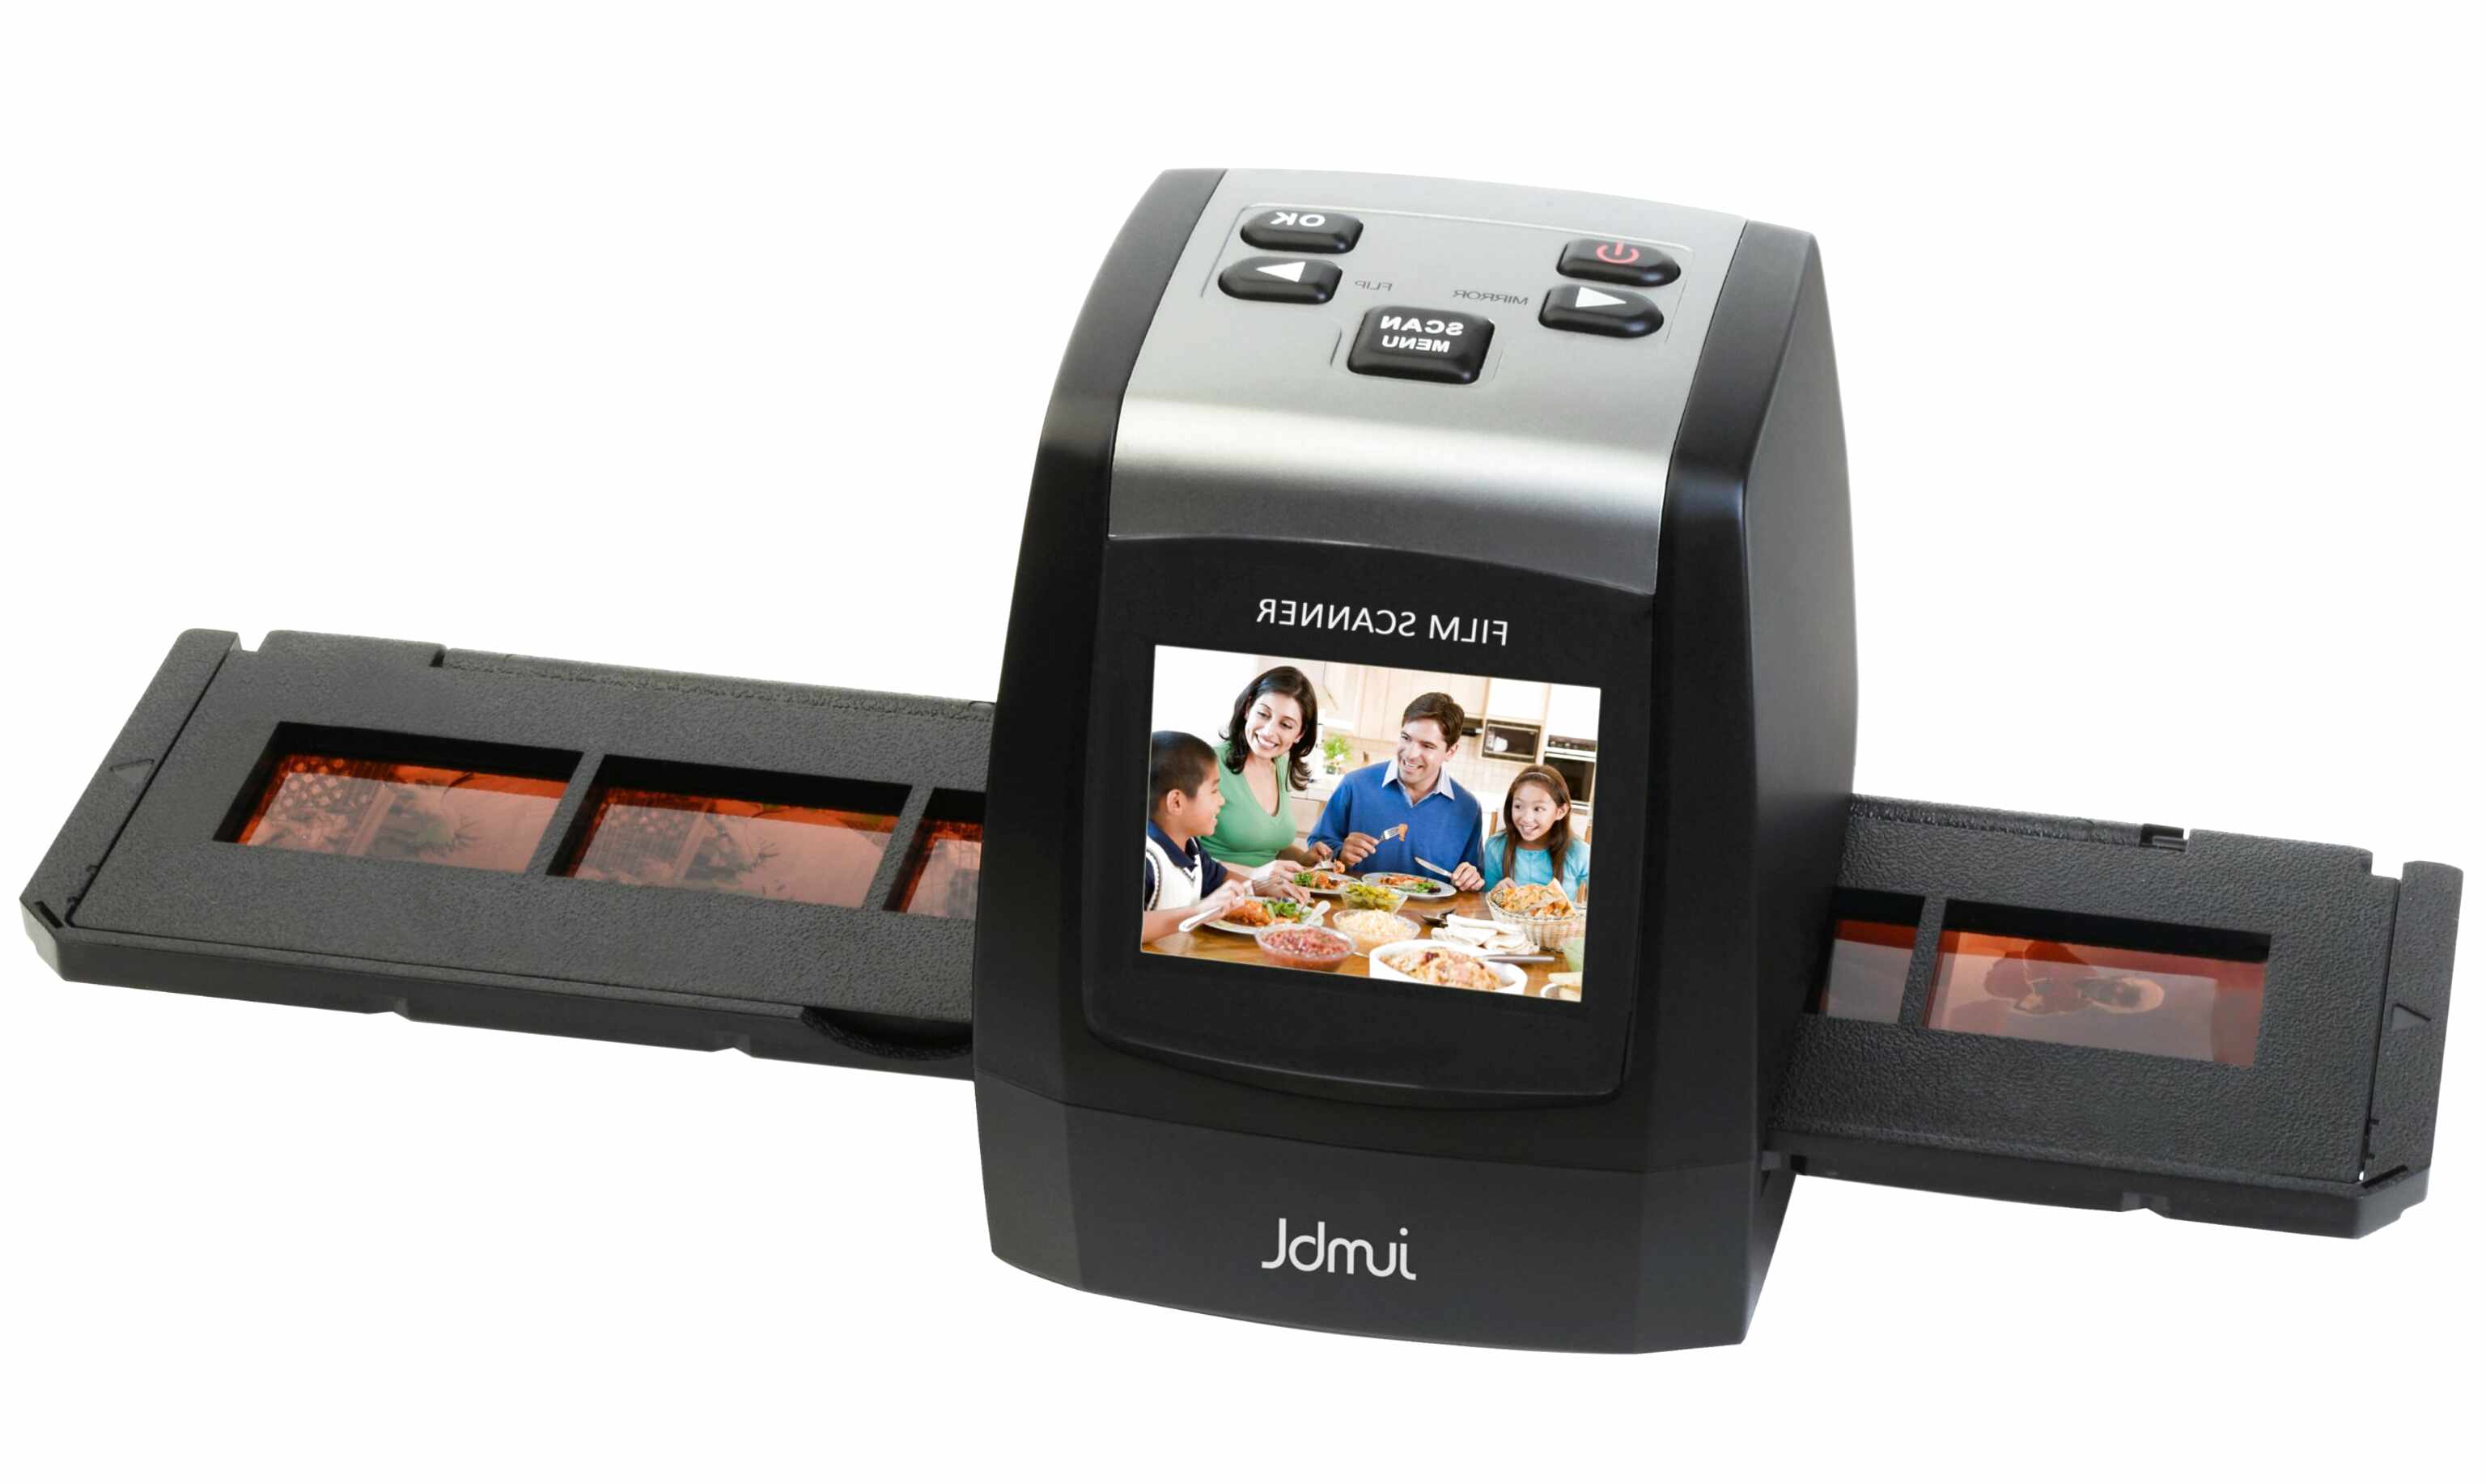 35mm Negative Film Slide Scanner For Sale In Uk 56 Used 35mm Negative